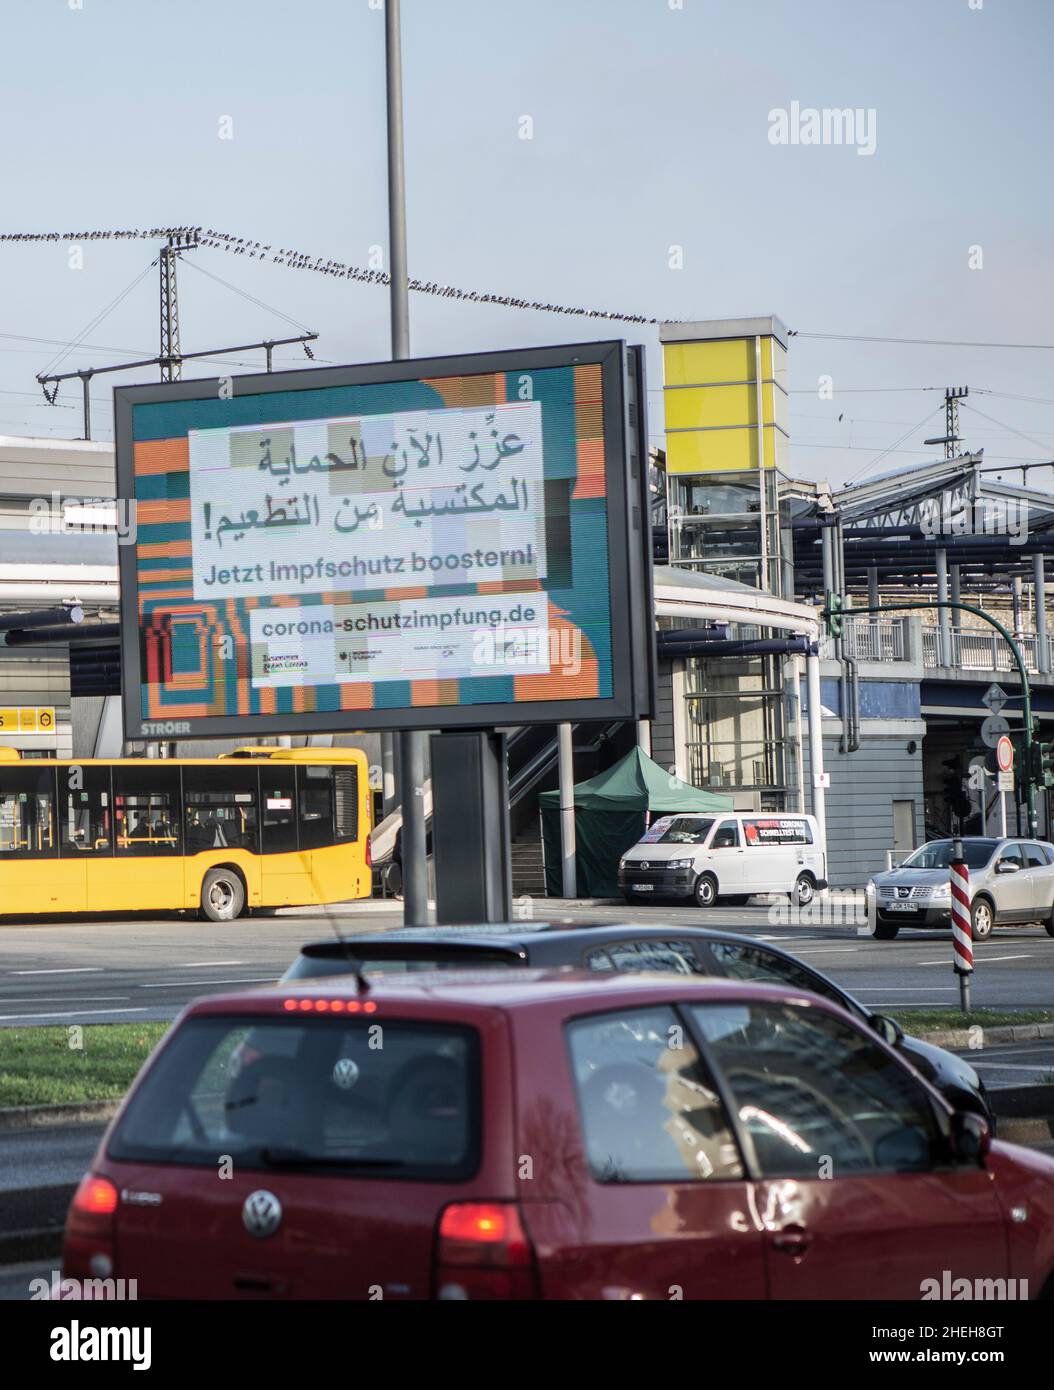 Aufforderung zur Booster-Impfung auf einem Schild in Essen / NRW, auch in arabischen (?) Schriftzeichen Stock Photo